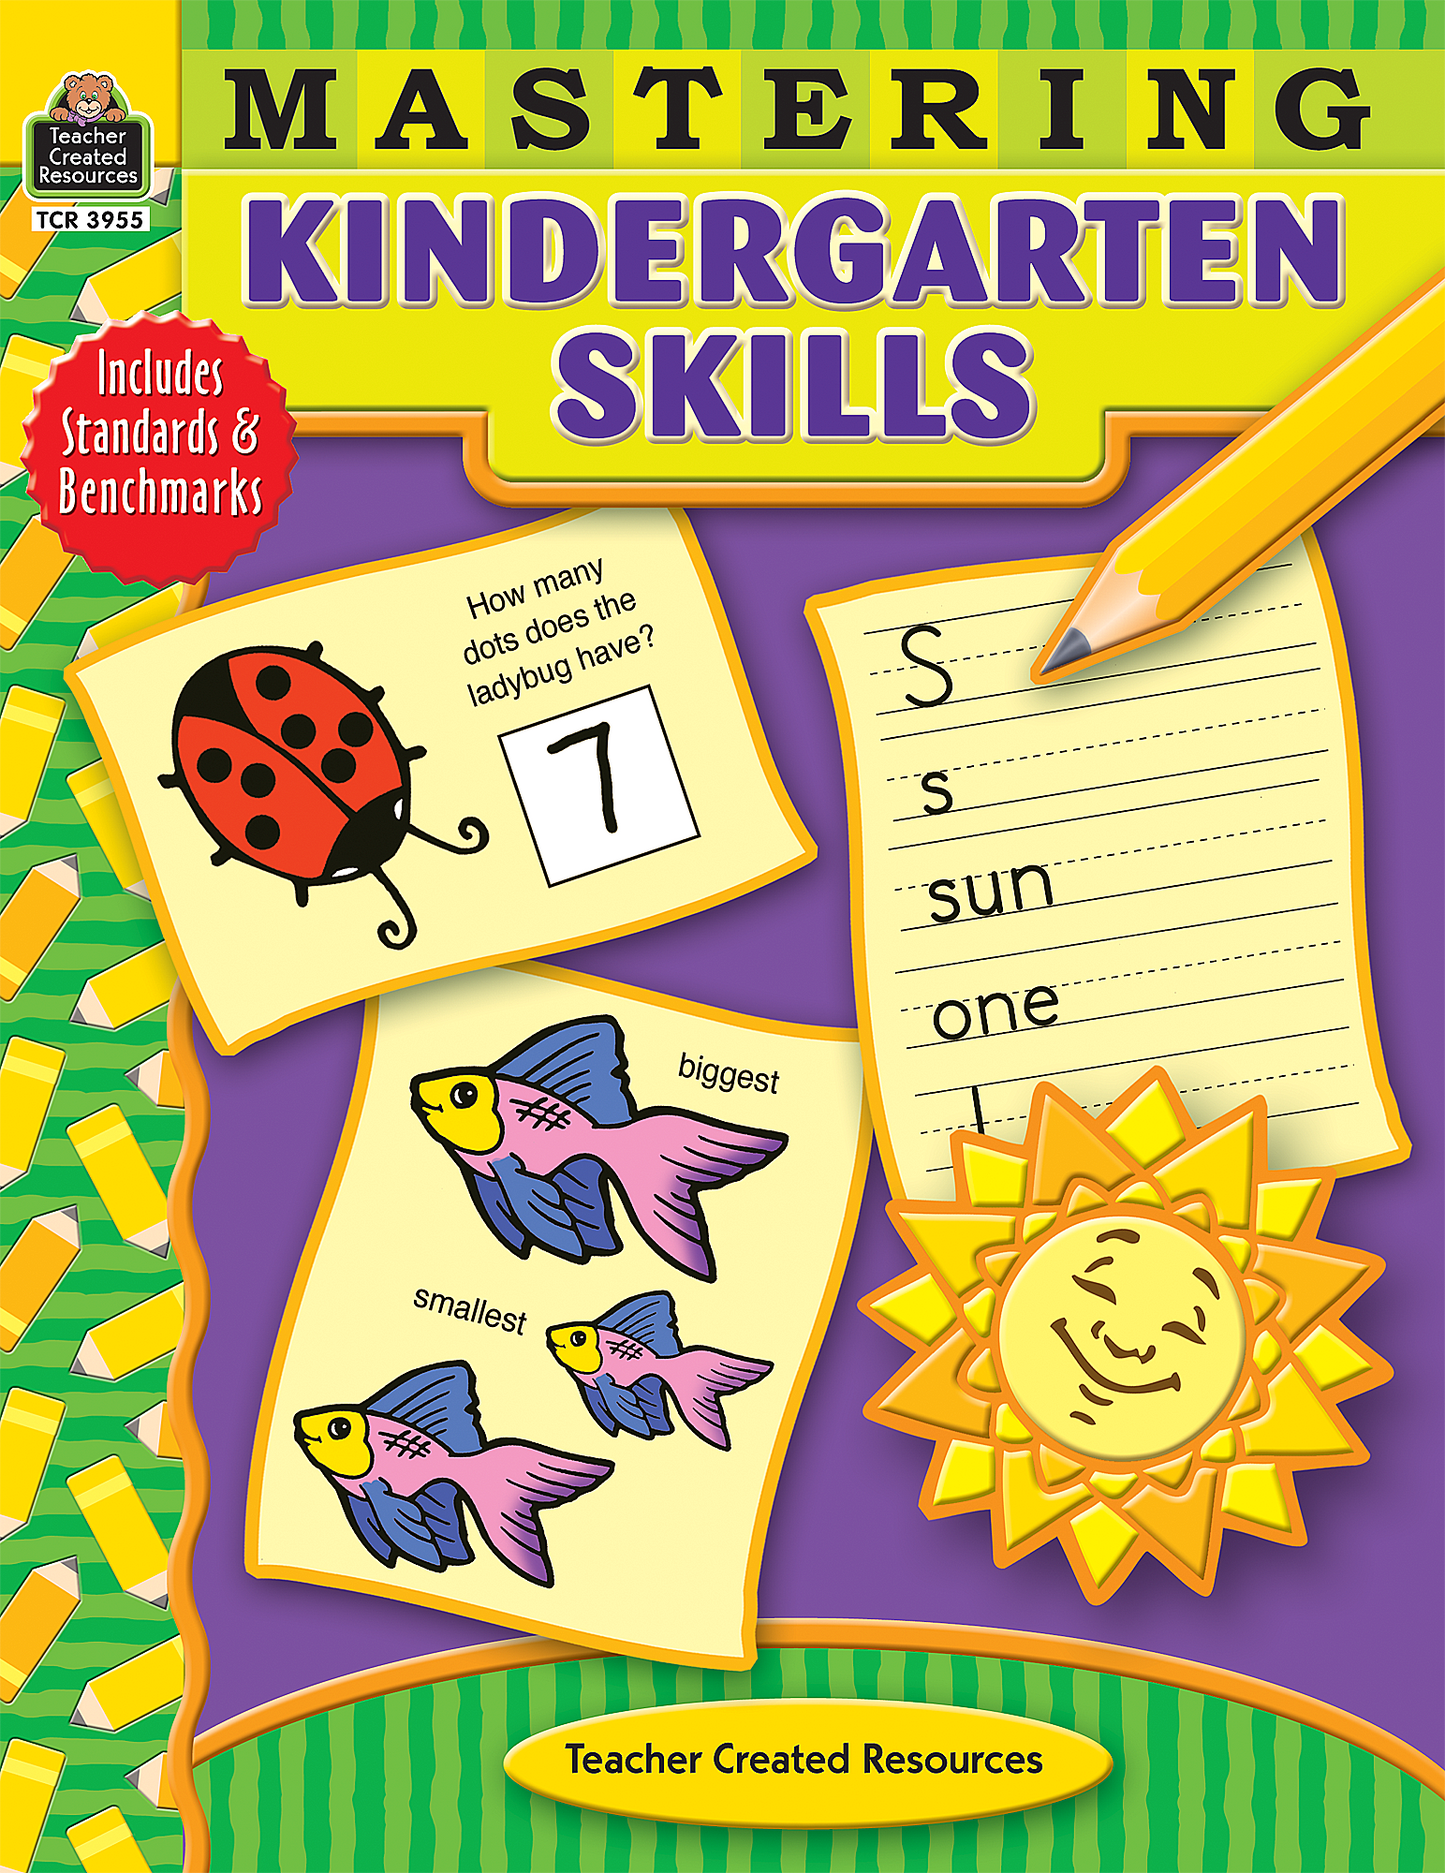 Mastering Kindergarten Skills